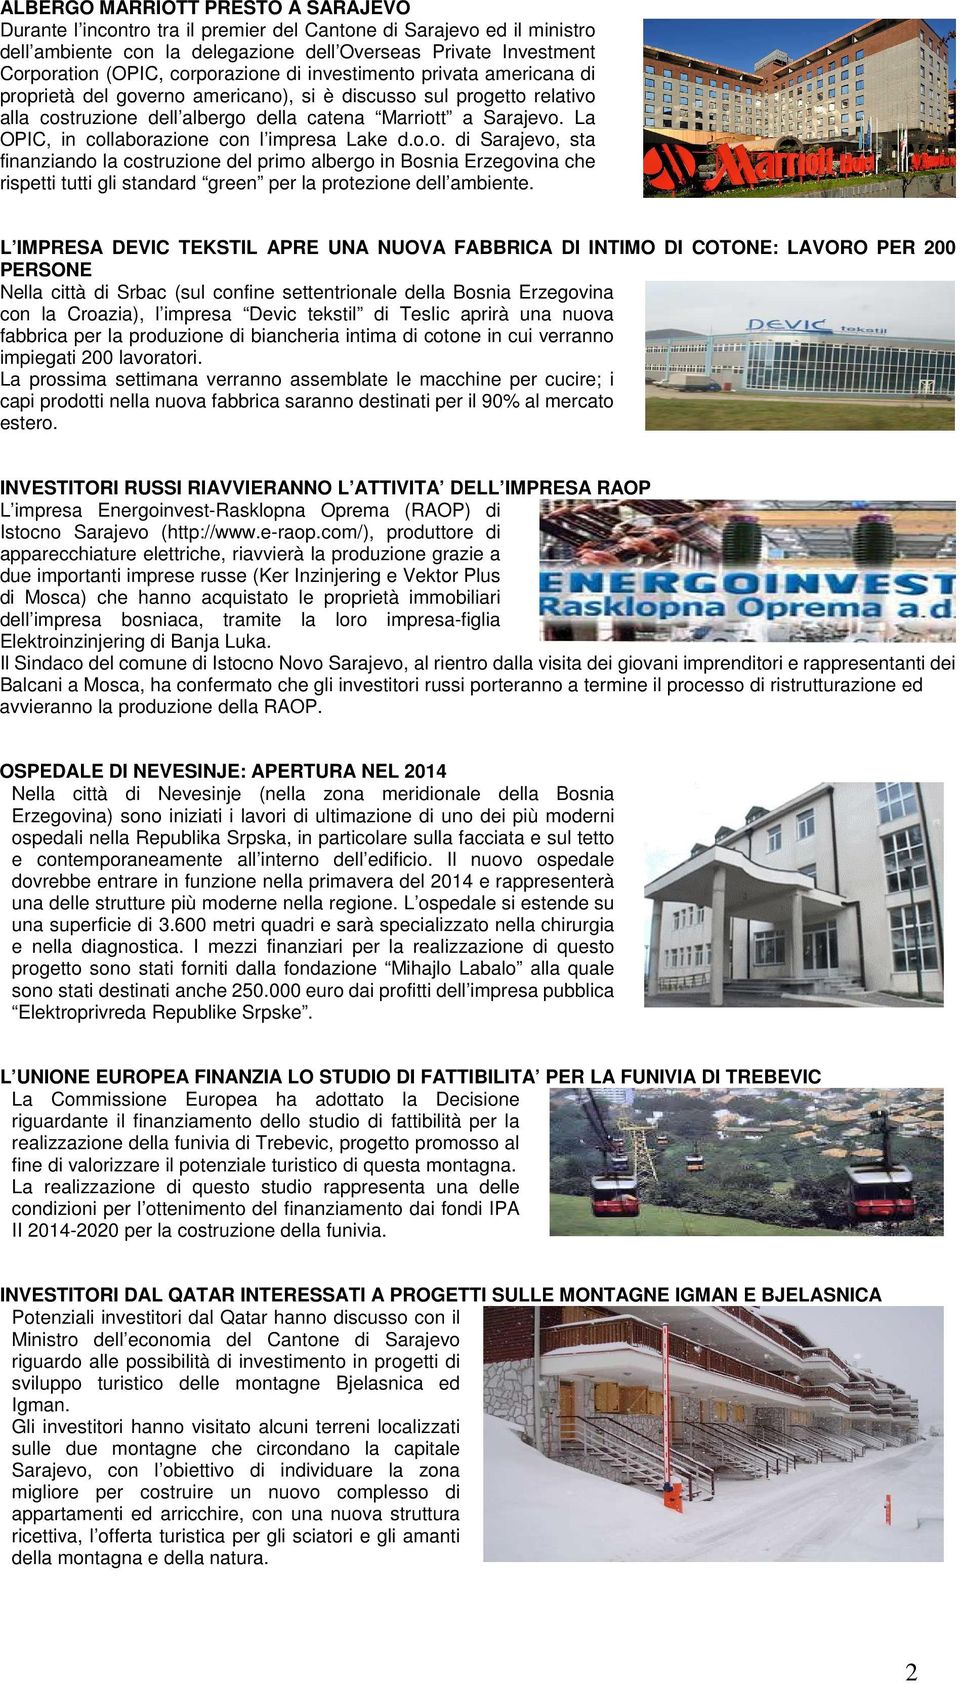 La OPIC, in collaborazione con l impresa Lake d.o.o. di Sarajevo, sta finanziando la costruzione del primo albergo in Bosnia Erzegovina che rispetti tutti gli standard green per la protezione dell ambiente.